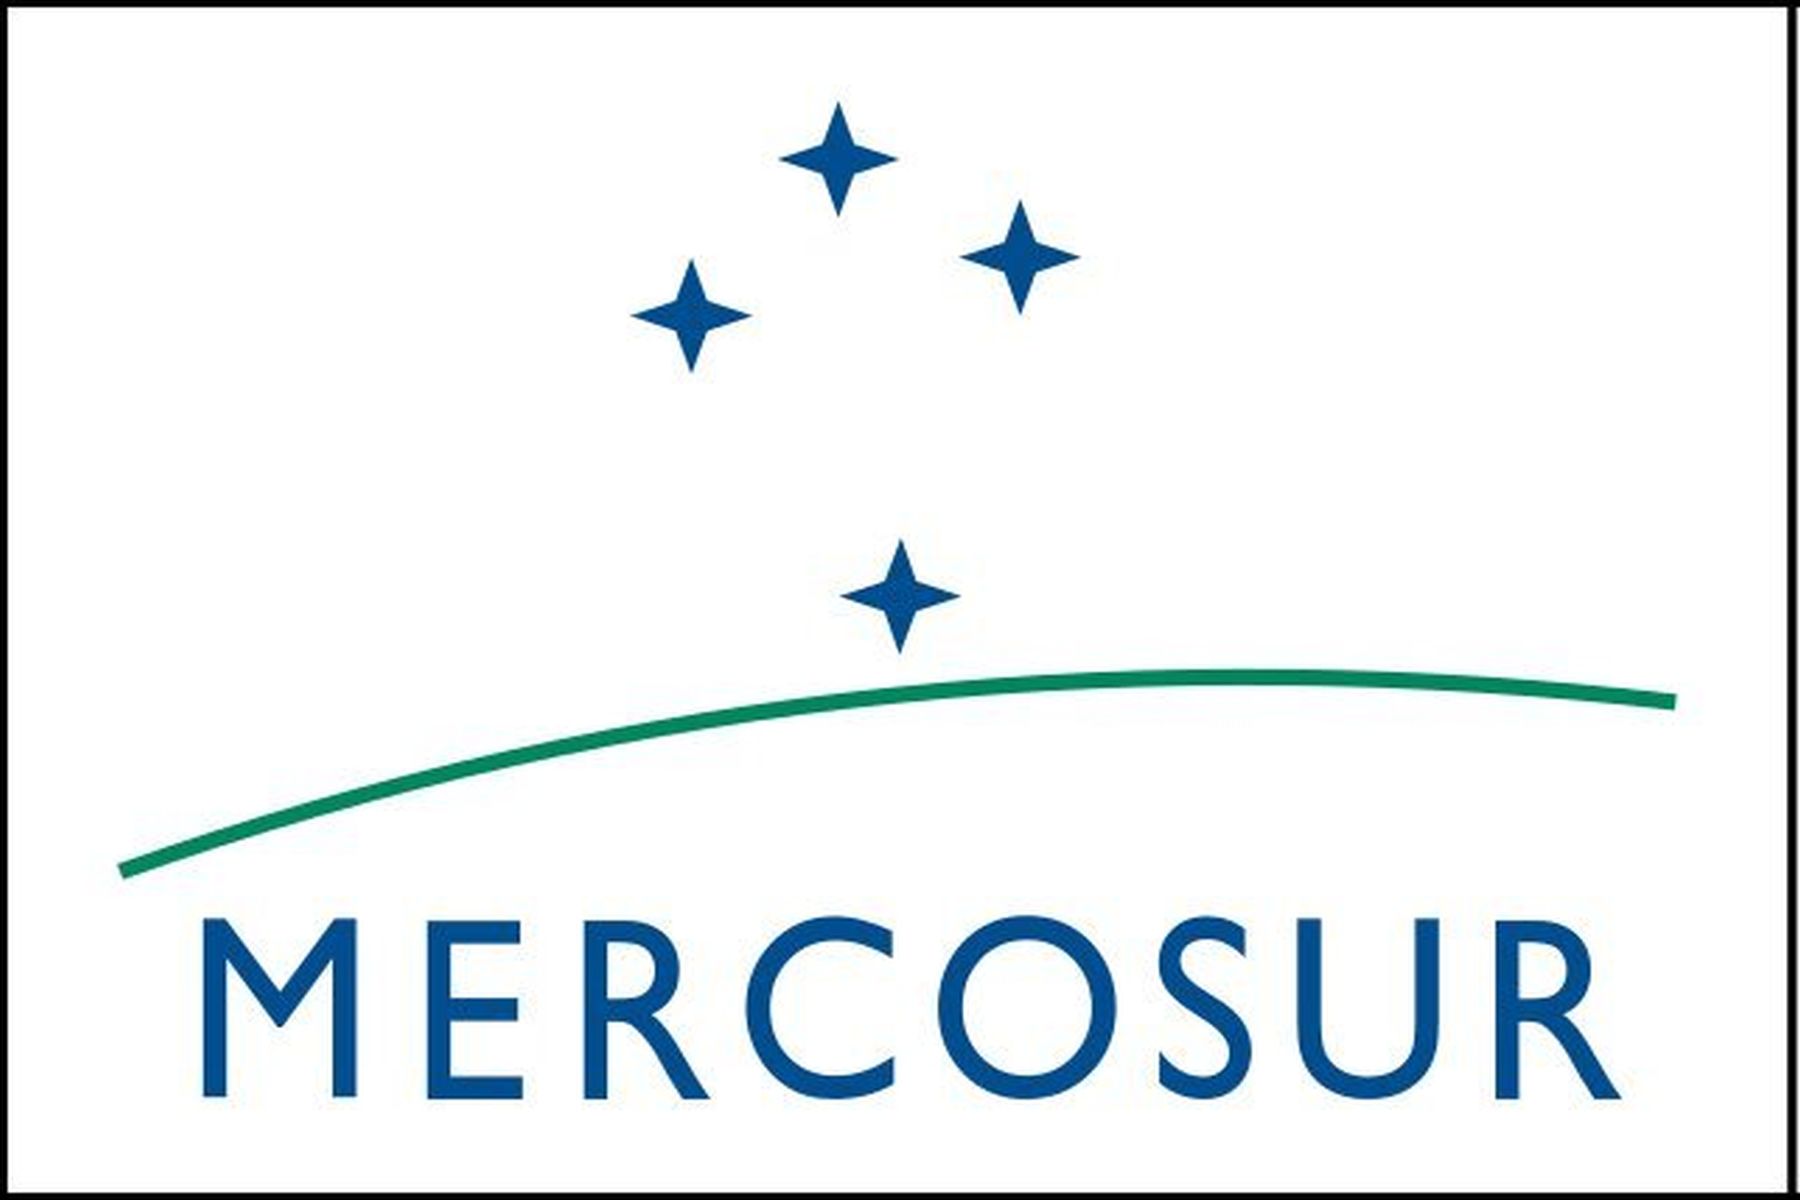 Mercosur-Abkommen zwischen der EU und 5 Ländern Lateinamerikas